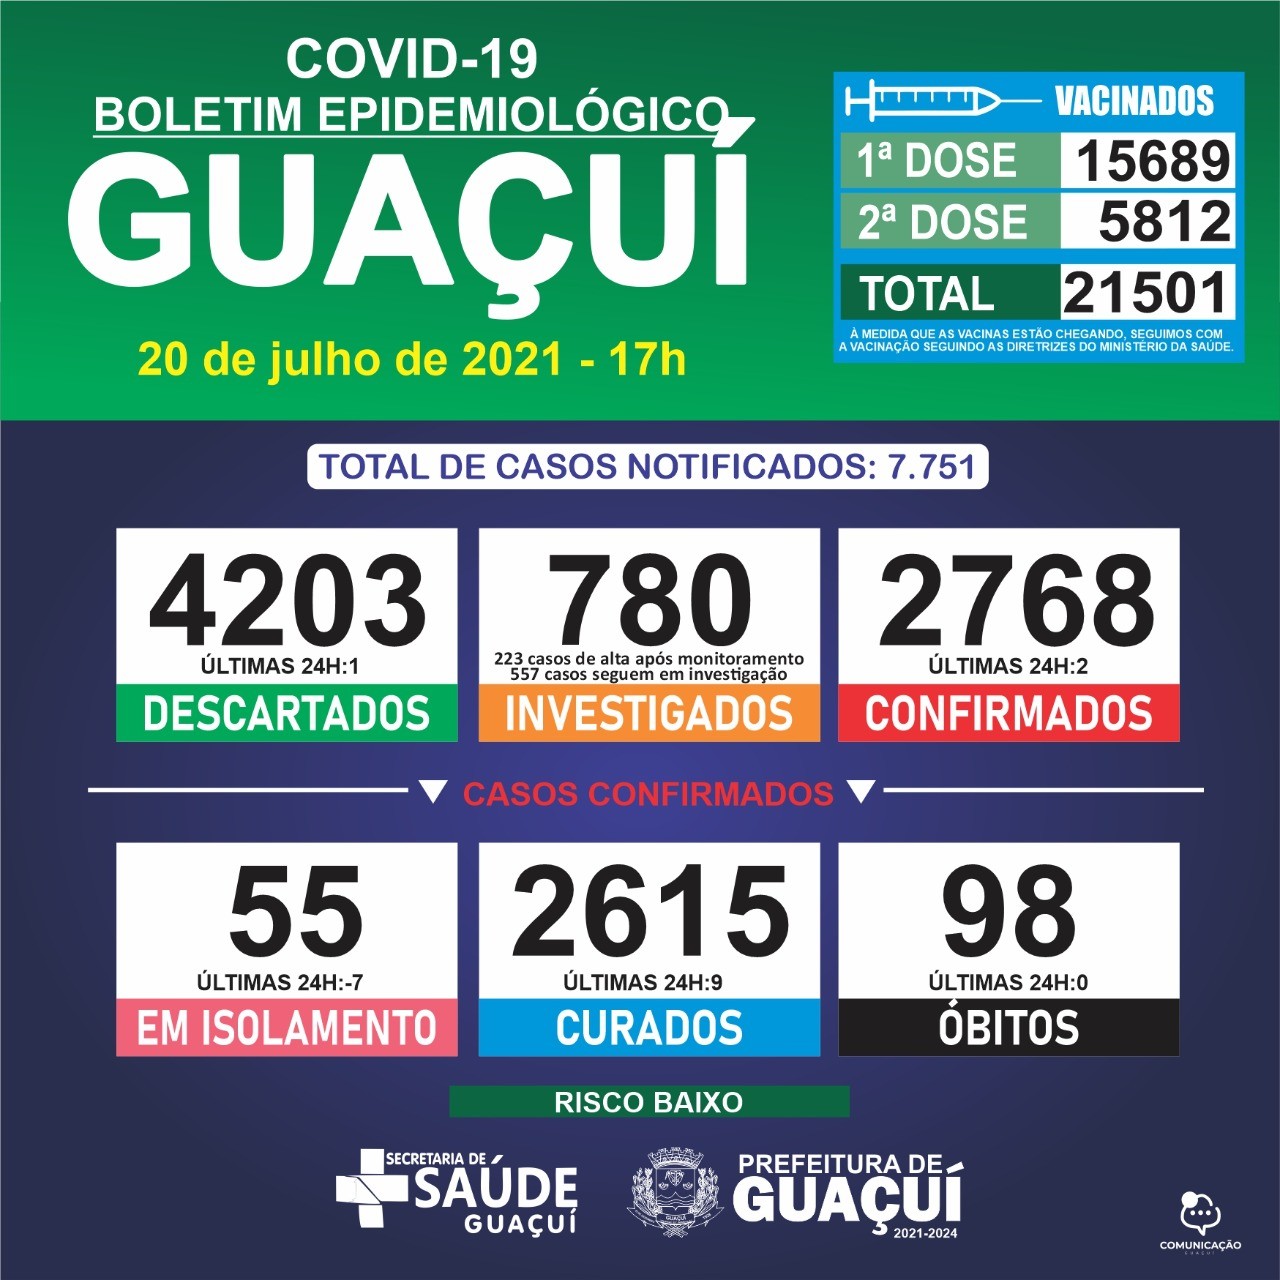 Boletim Epidemiológico 20/07/21: Guaçuí registra 2 casos confirmados e 9 curados nas últimas 24 horas